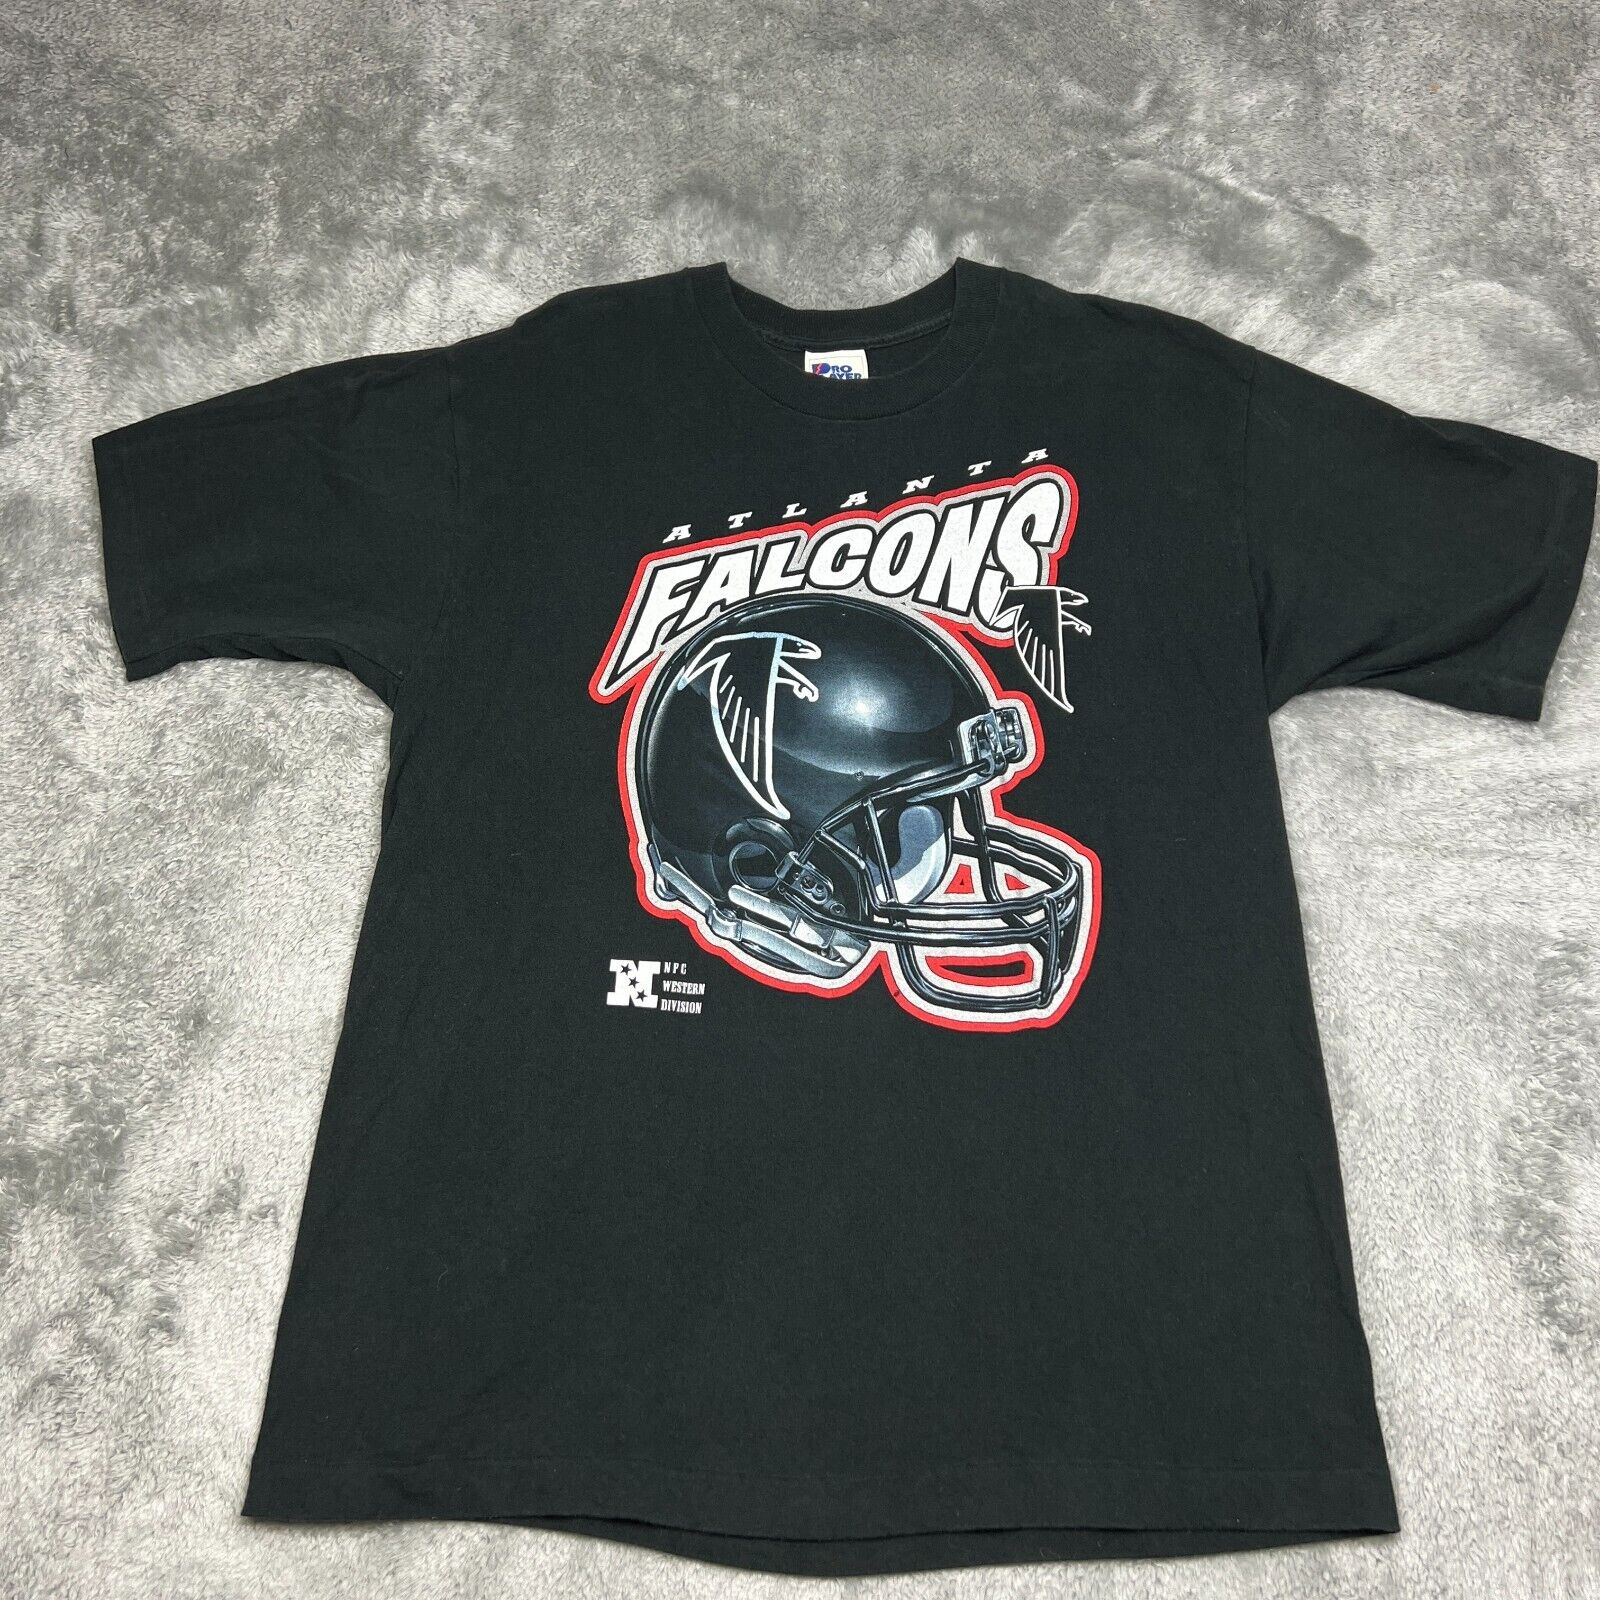 Vintage Atlanta Falcons Shirt Mens Large Black Pro Player Football Made in USA